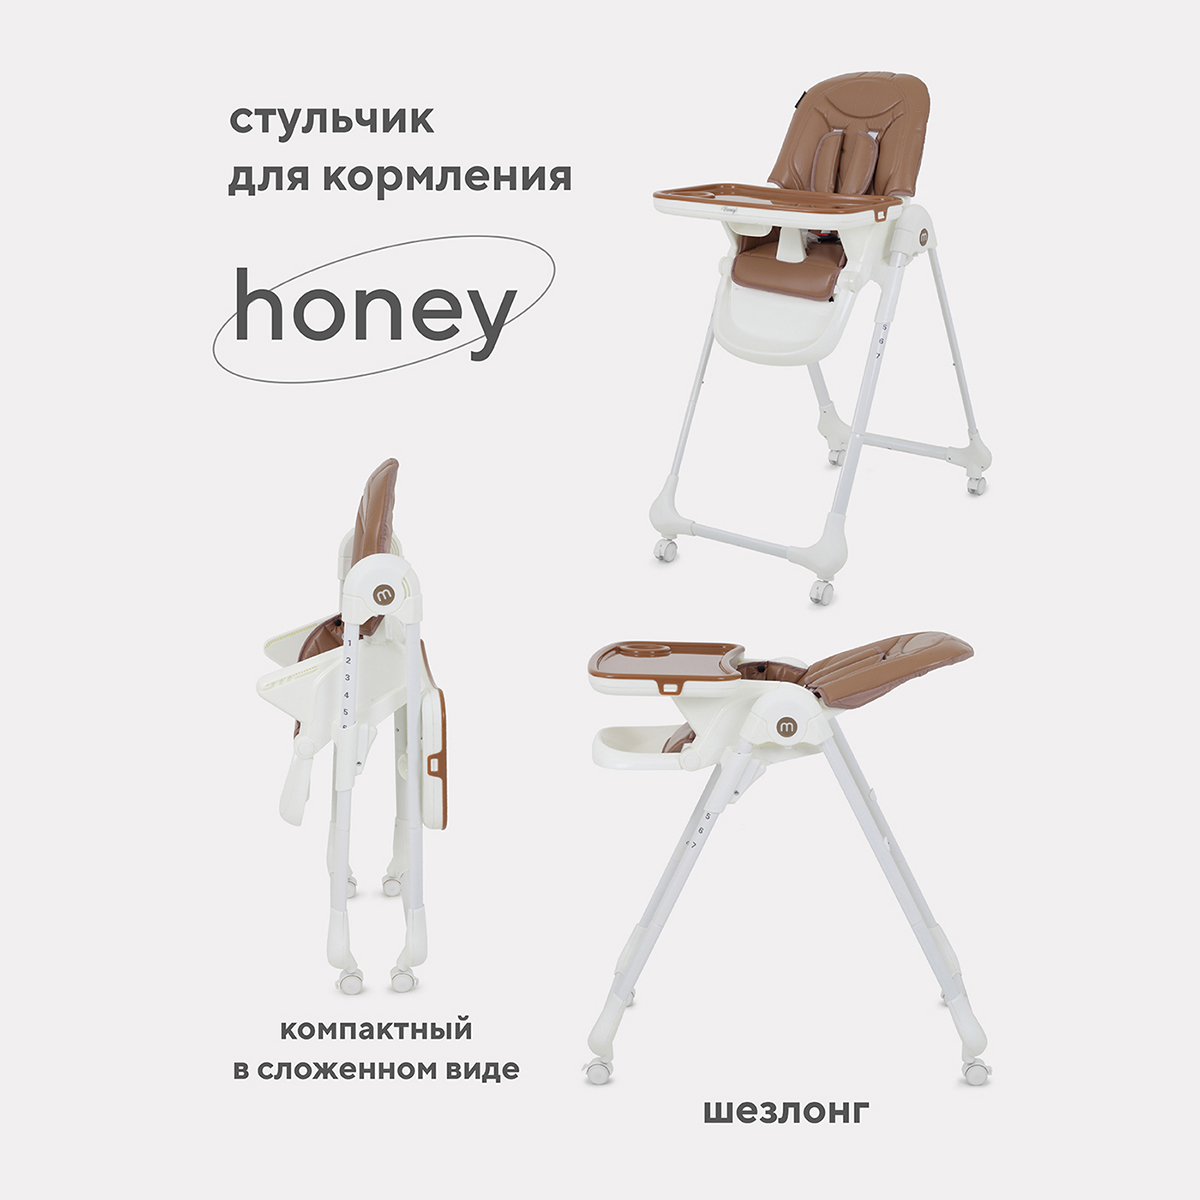 Стульчик для кормления MOWBaby HONEY от 6 месяцев RH600 beige стульчик для кормления mowbaby honey от 6 месяцев rh600 grey